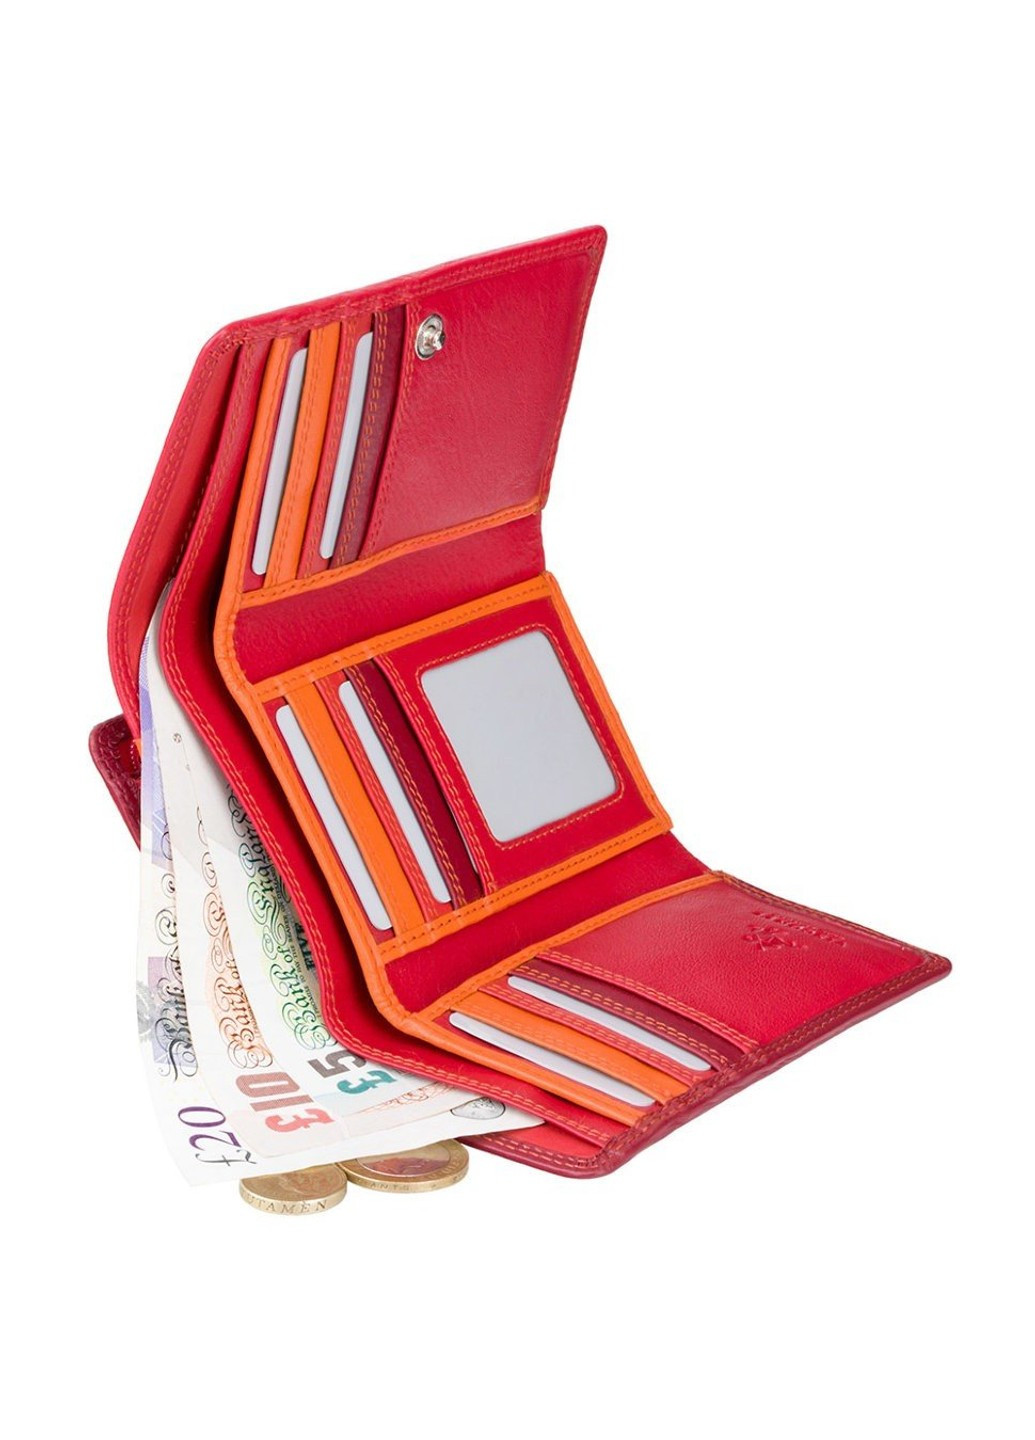 Женский кожаный кошелек BORA rb43 red m Visconti (261851501)